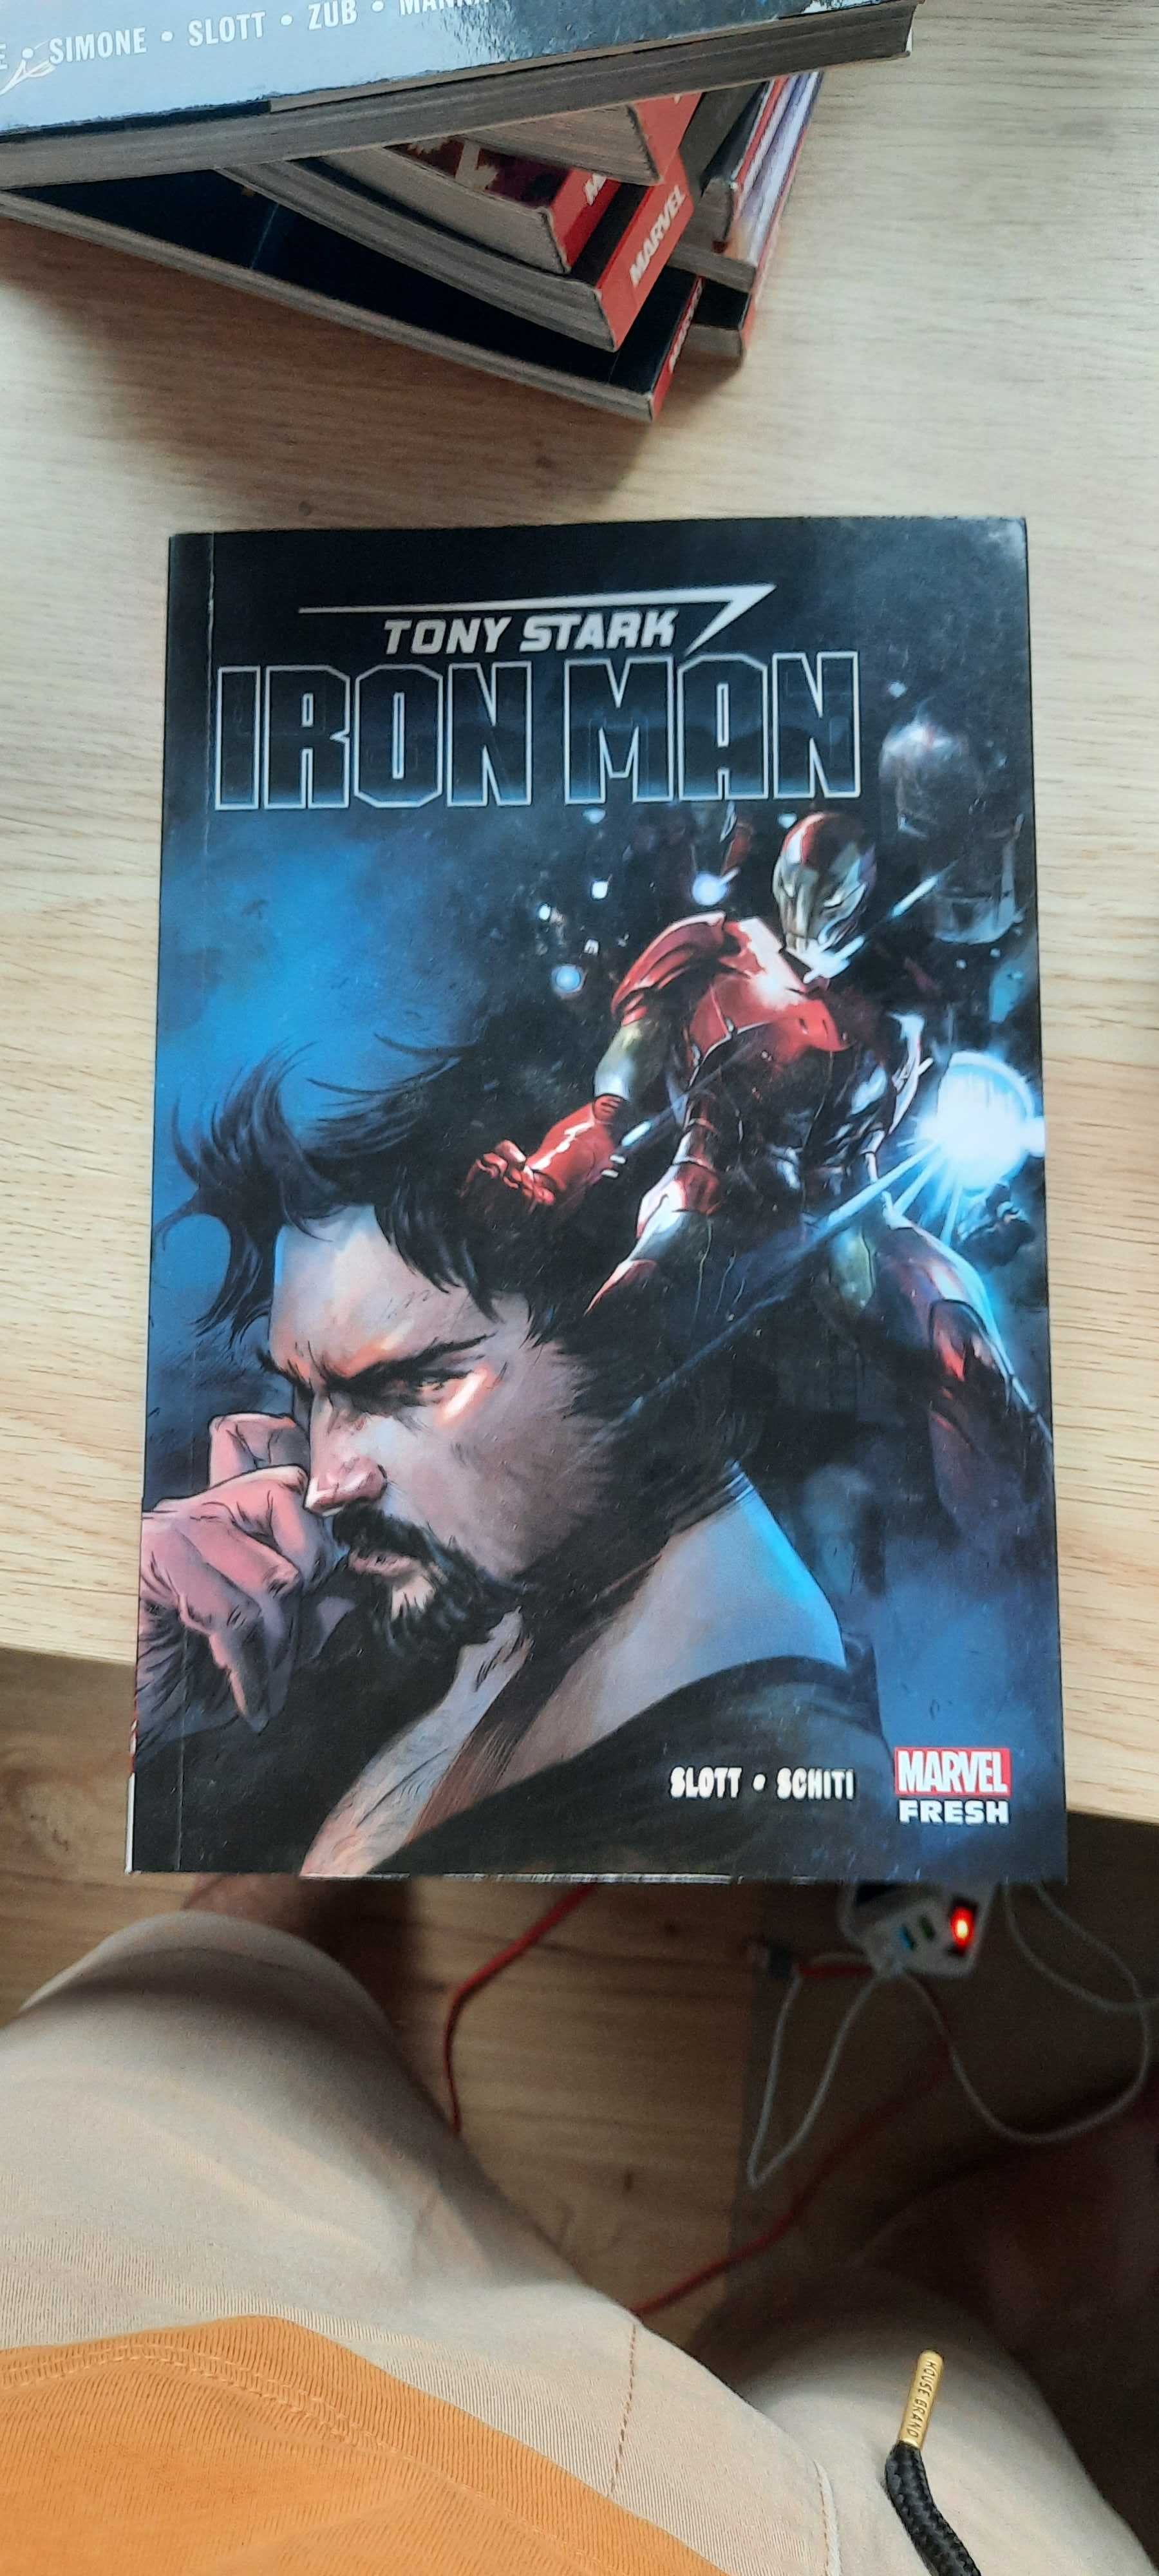 Tony Stark: Iron Man autorstwa Dana Slotta